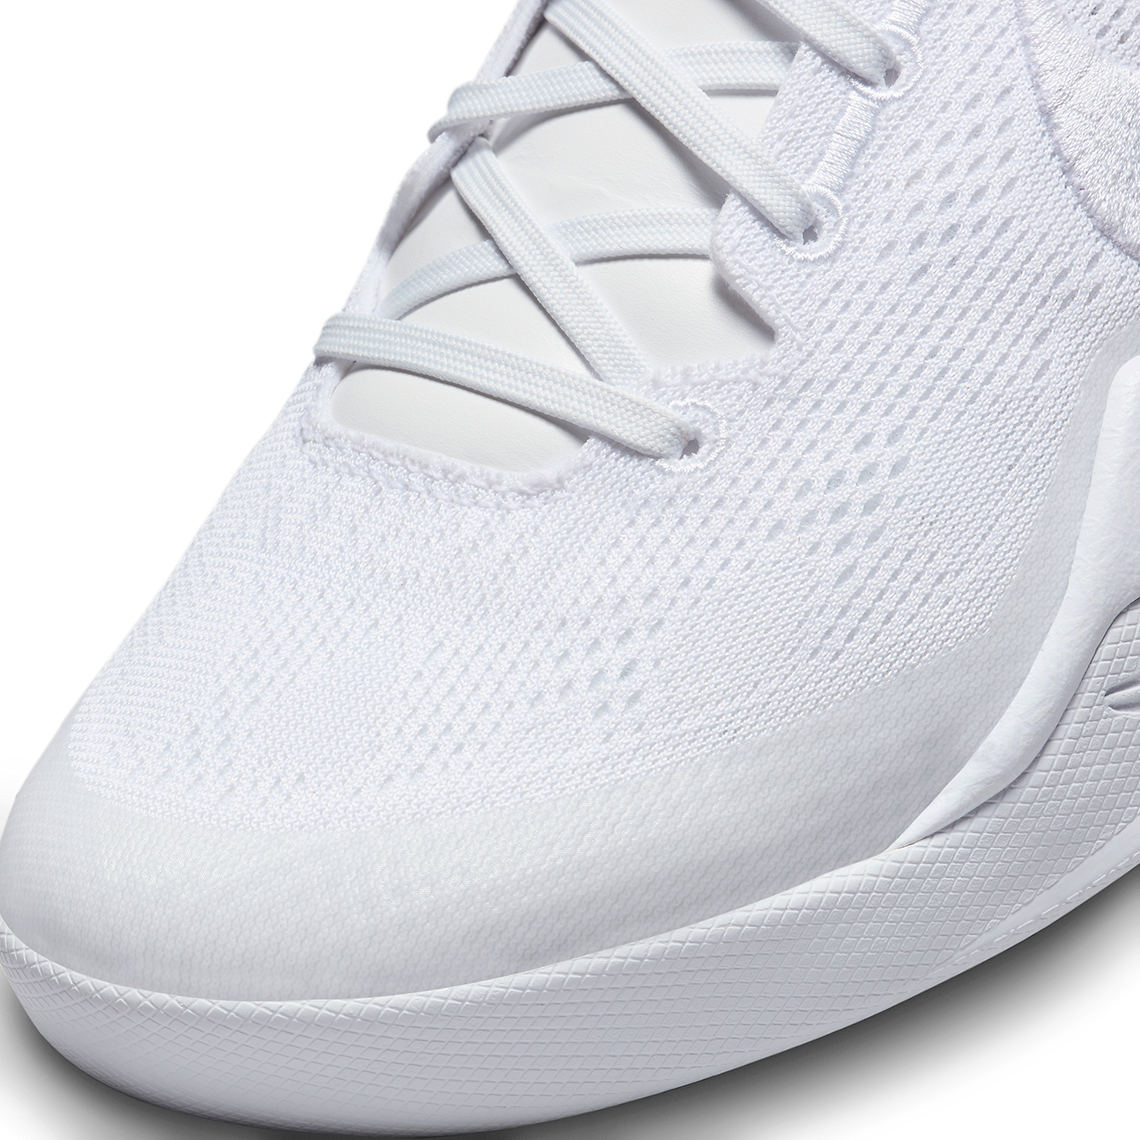 Nike Kobe 8 Protro Halo White Fj9364 100 Release Date 2